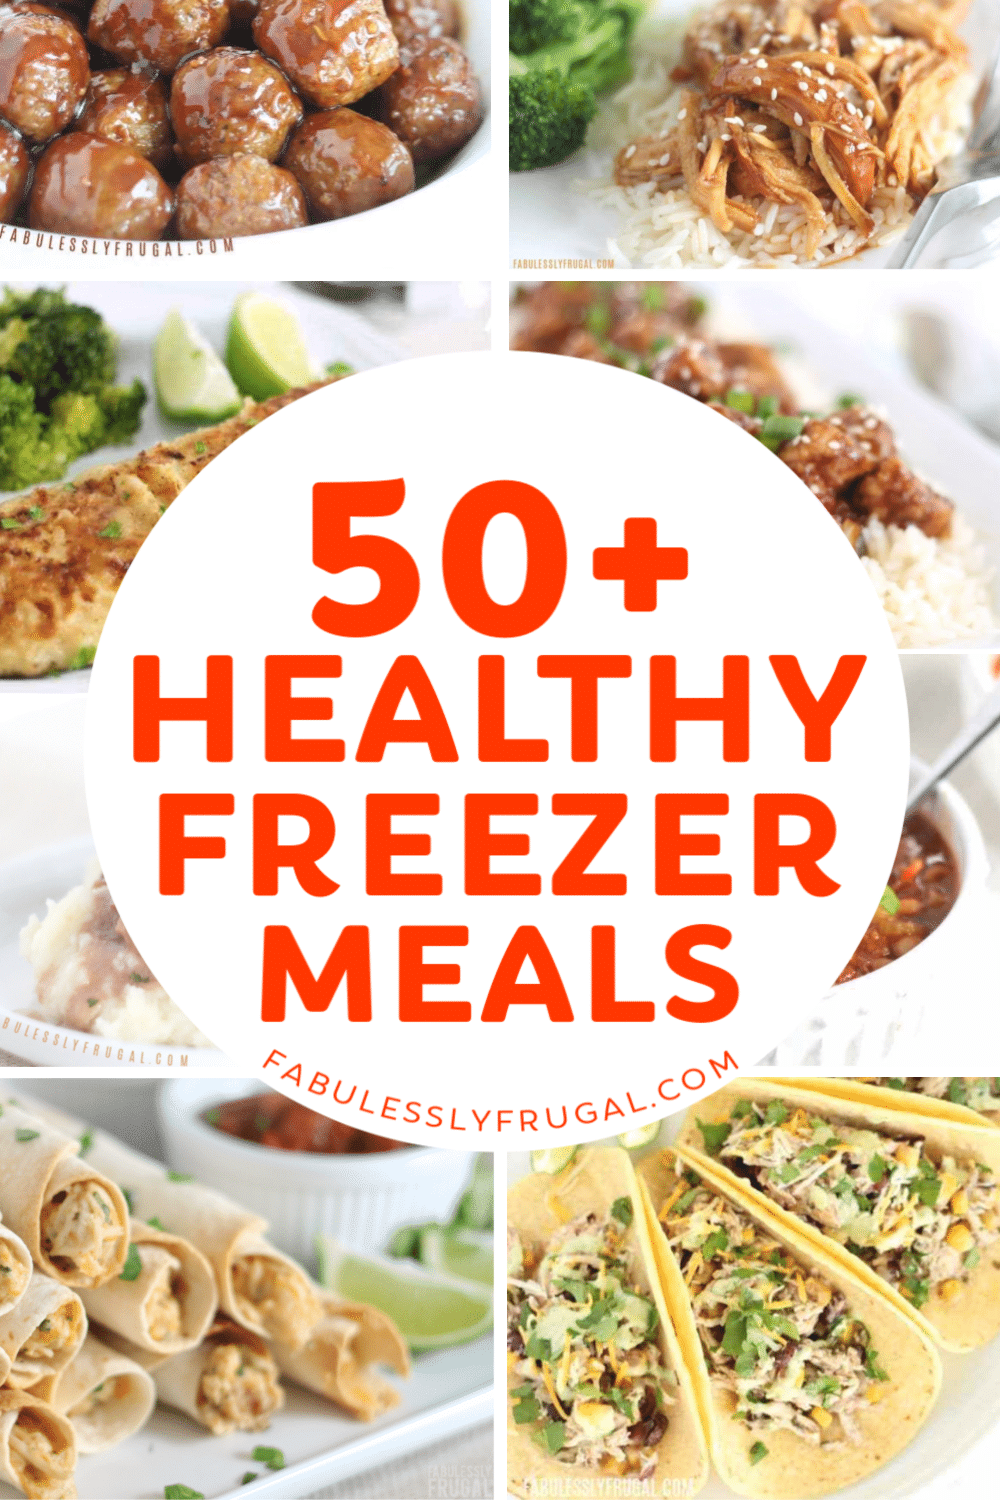 Healthy freezer meals